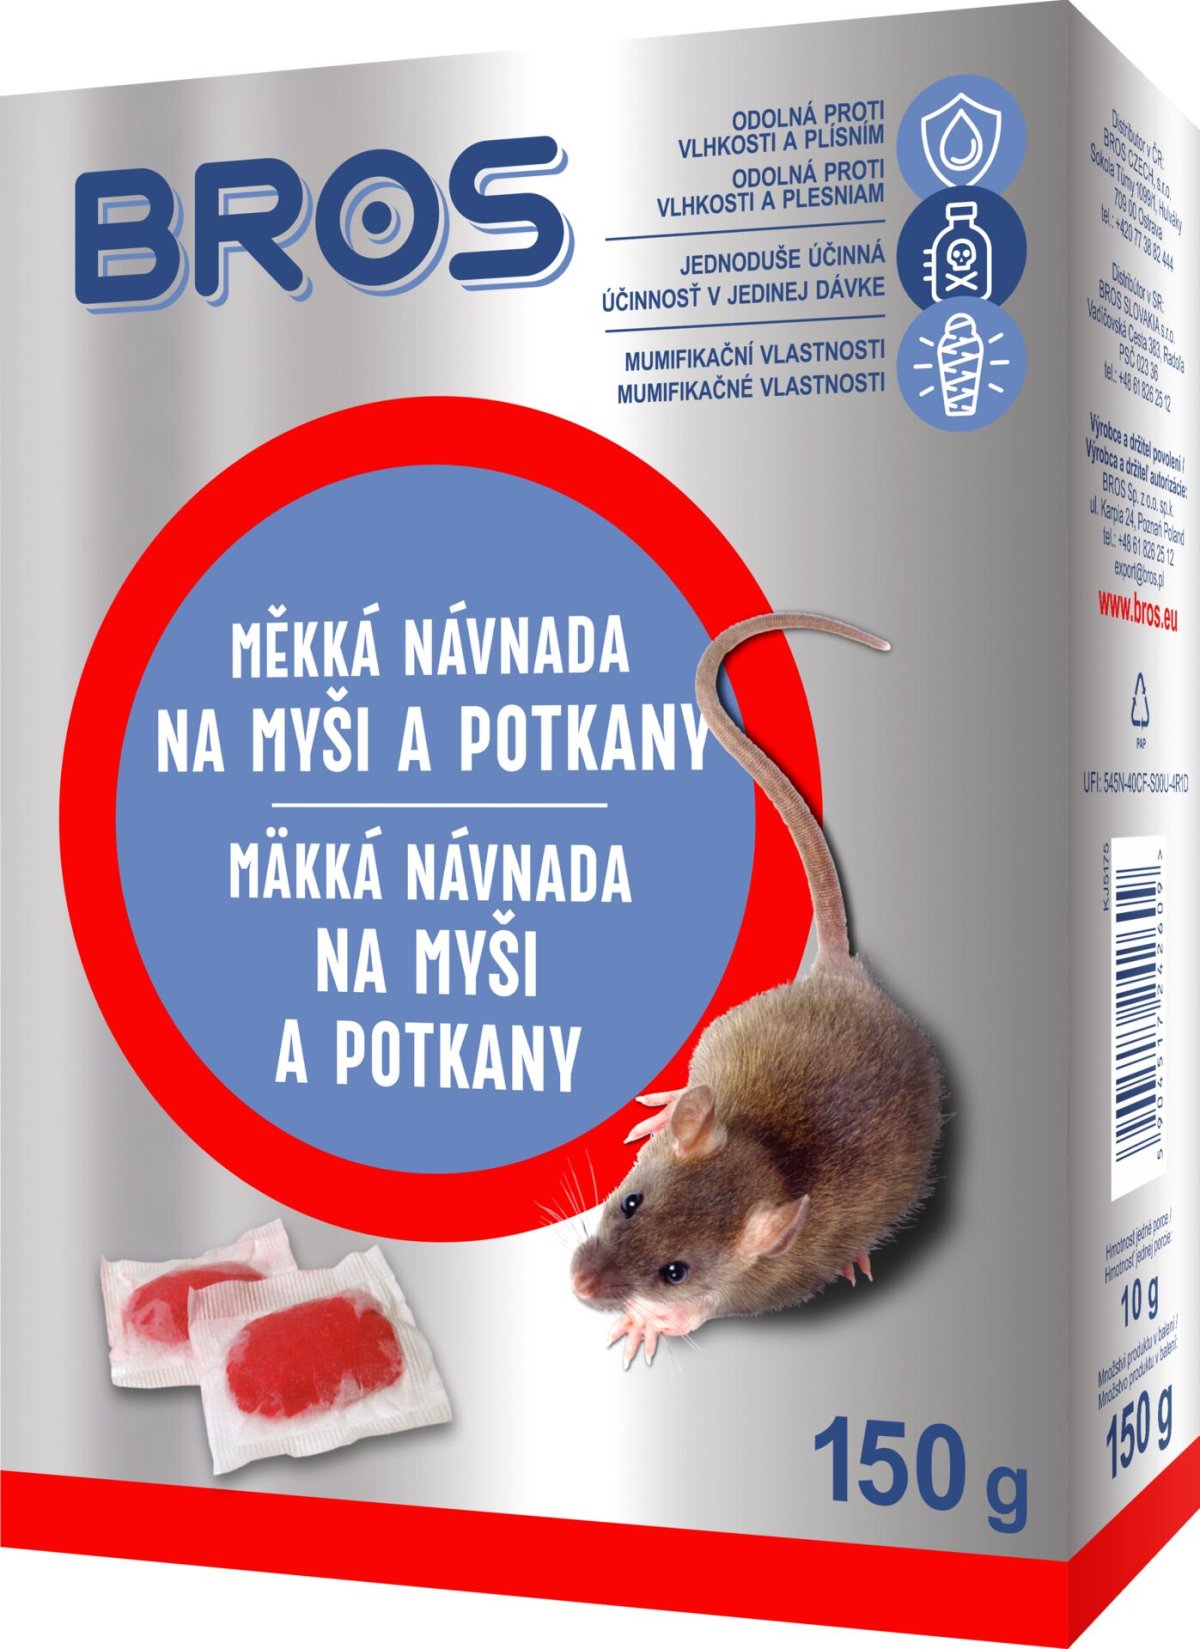 Rodenticid BROS měkká návnada na myši a potkany 150g